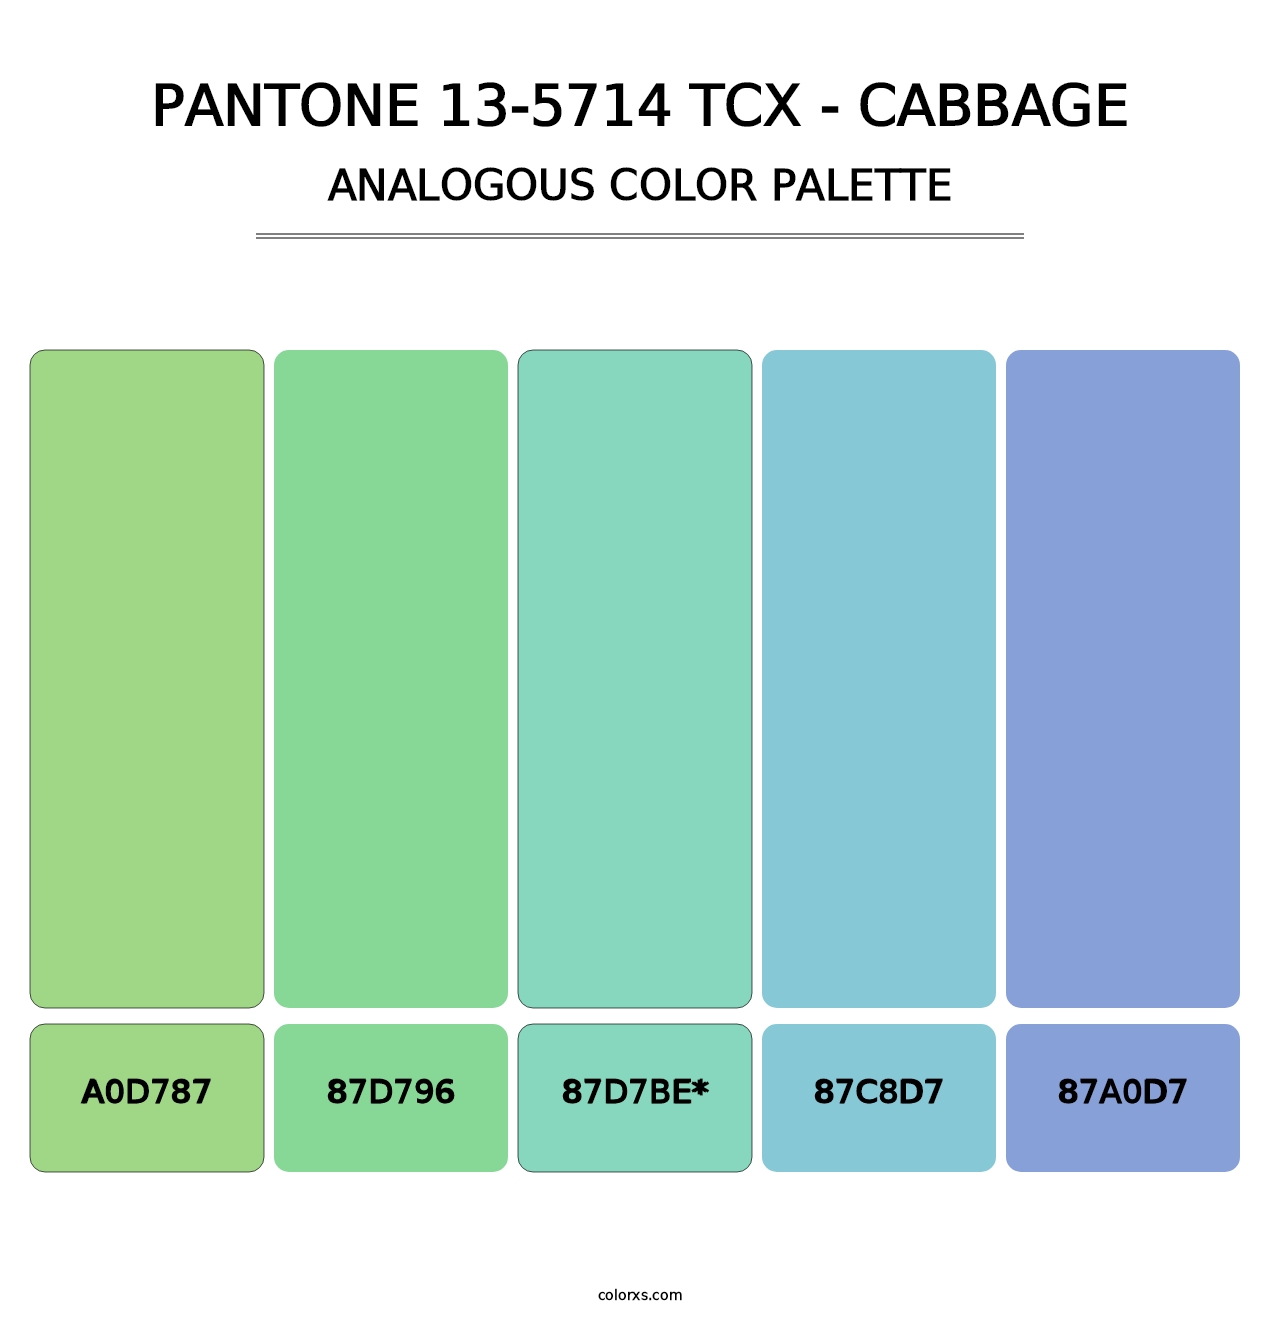 PANTONE 13-5714 TCX - Cabbage - Analogous Color Palette